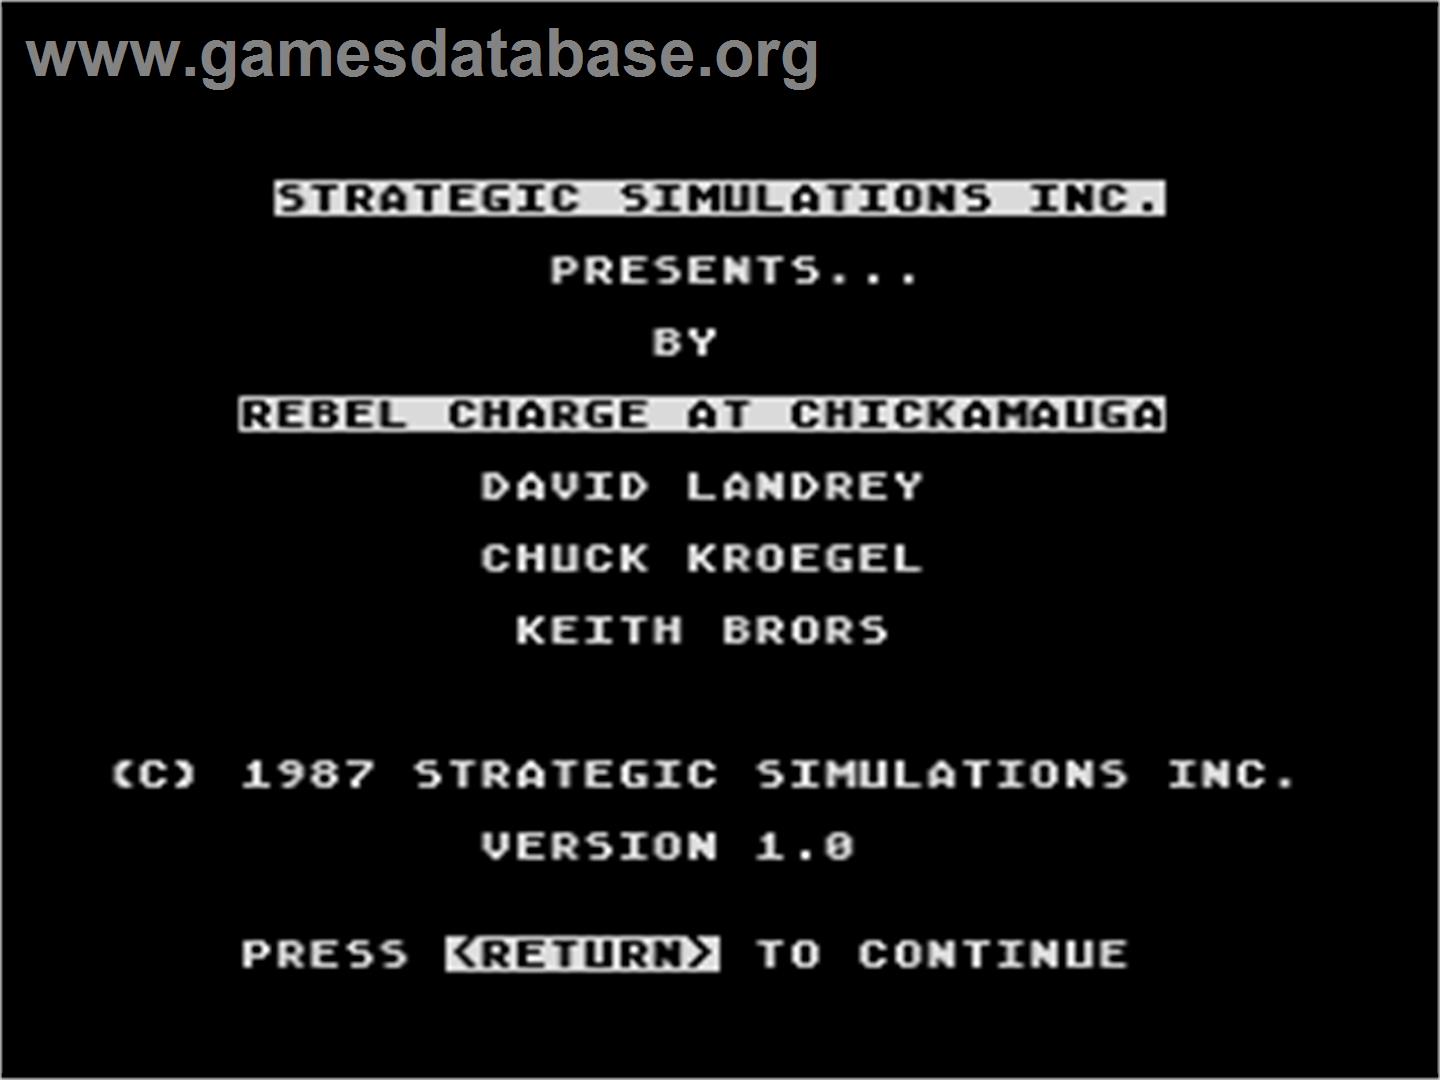 Rebel Charge at Chickamauga - Atari 8-bit - Artwork - Title Screen